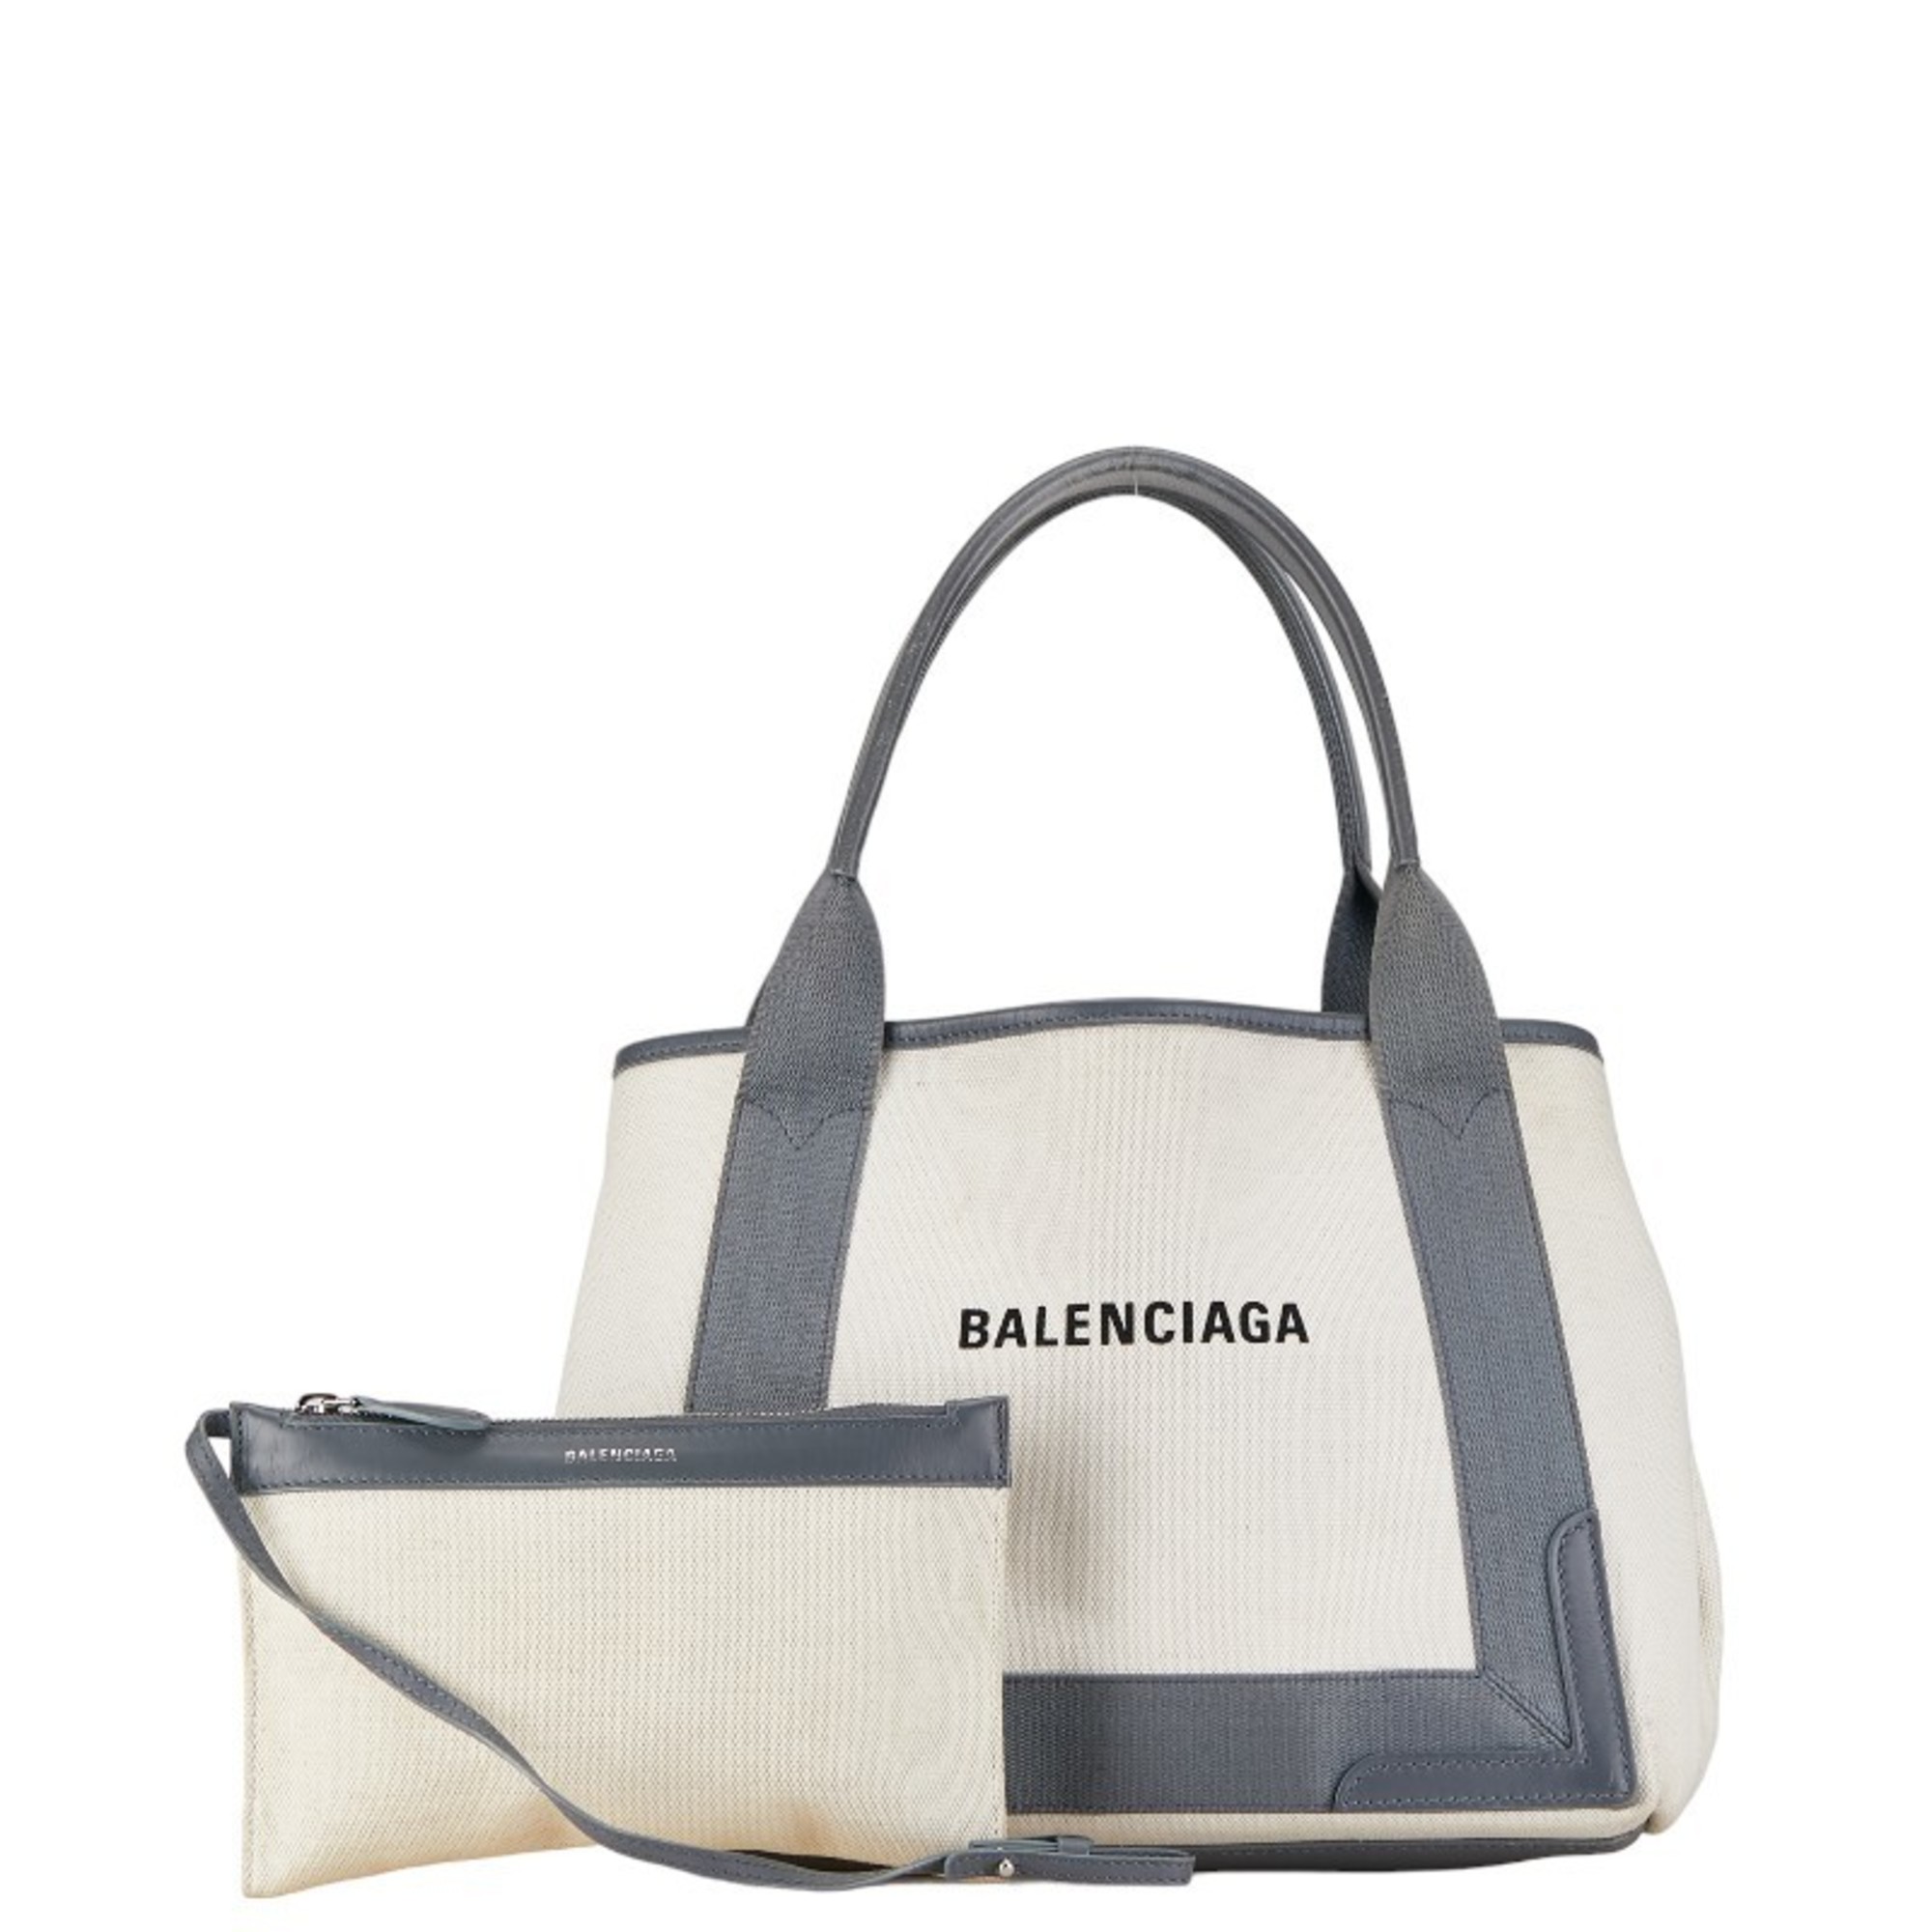 Balenciaga Navy Cabas S Tote Bag Shoulder 339933 White Grey Canvas Leather Women's BALENCIAGA